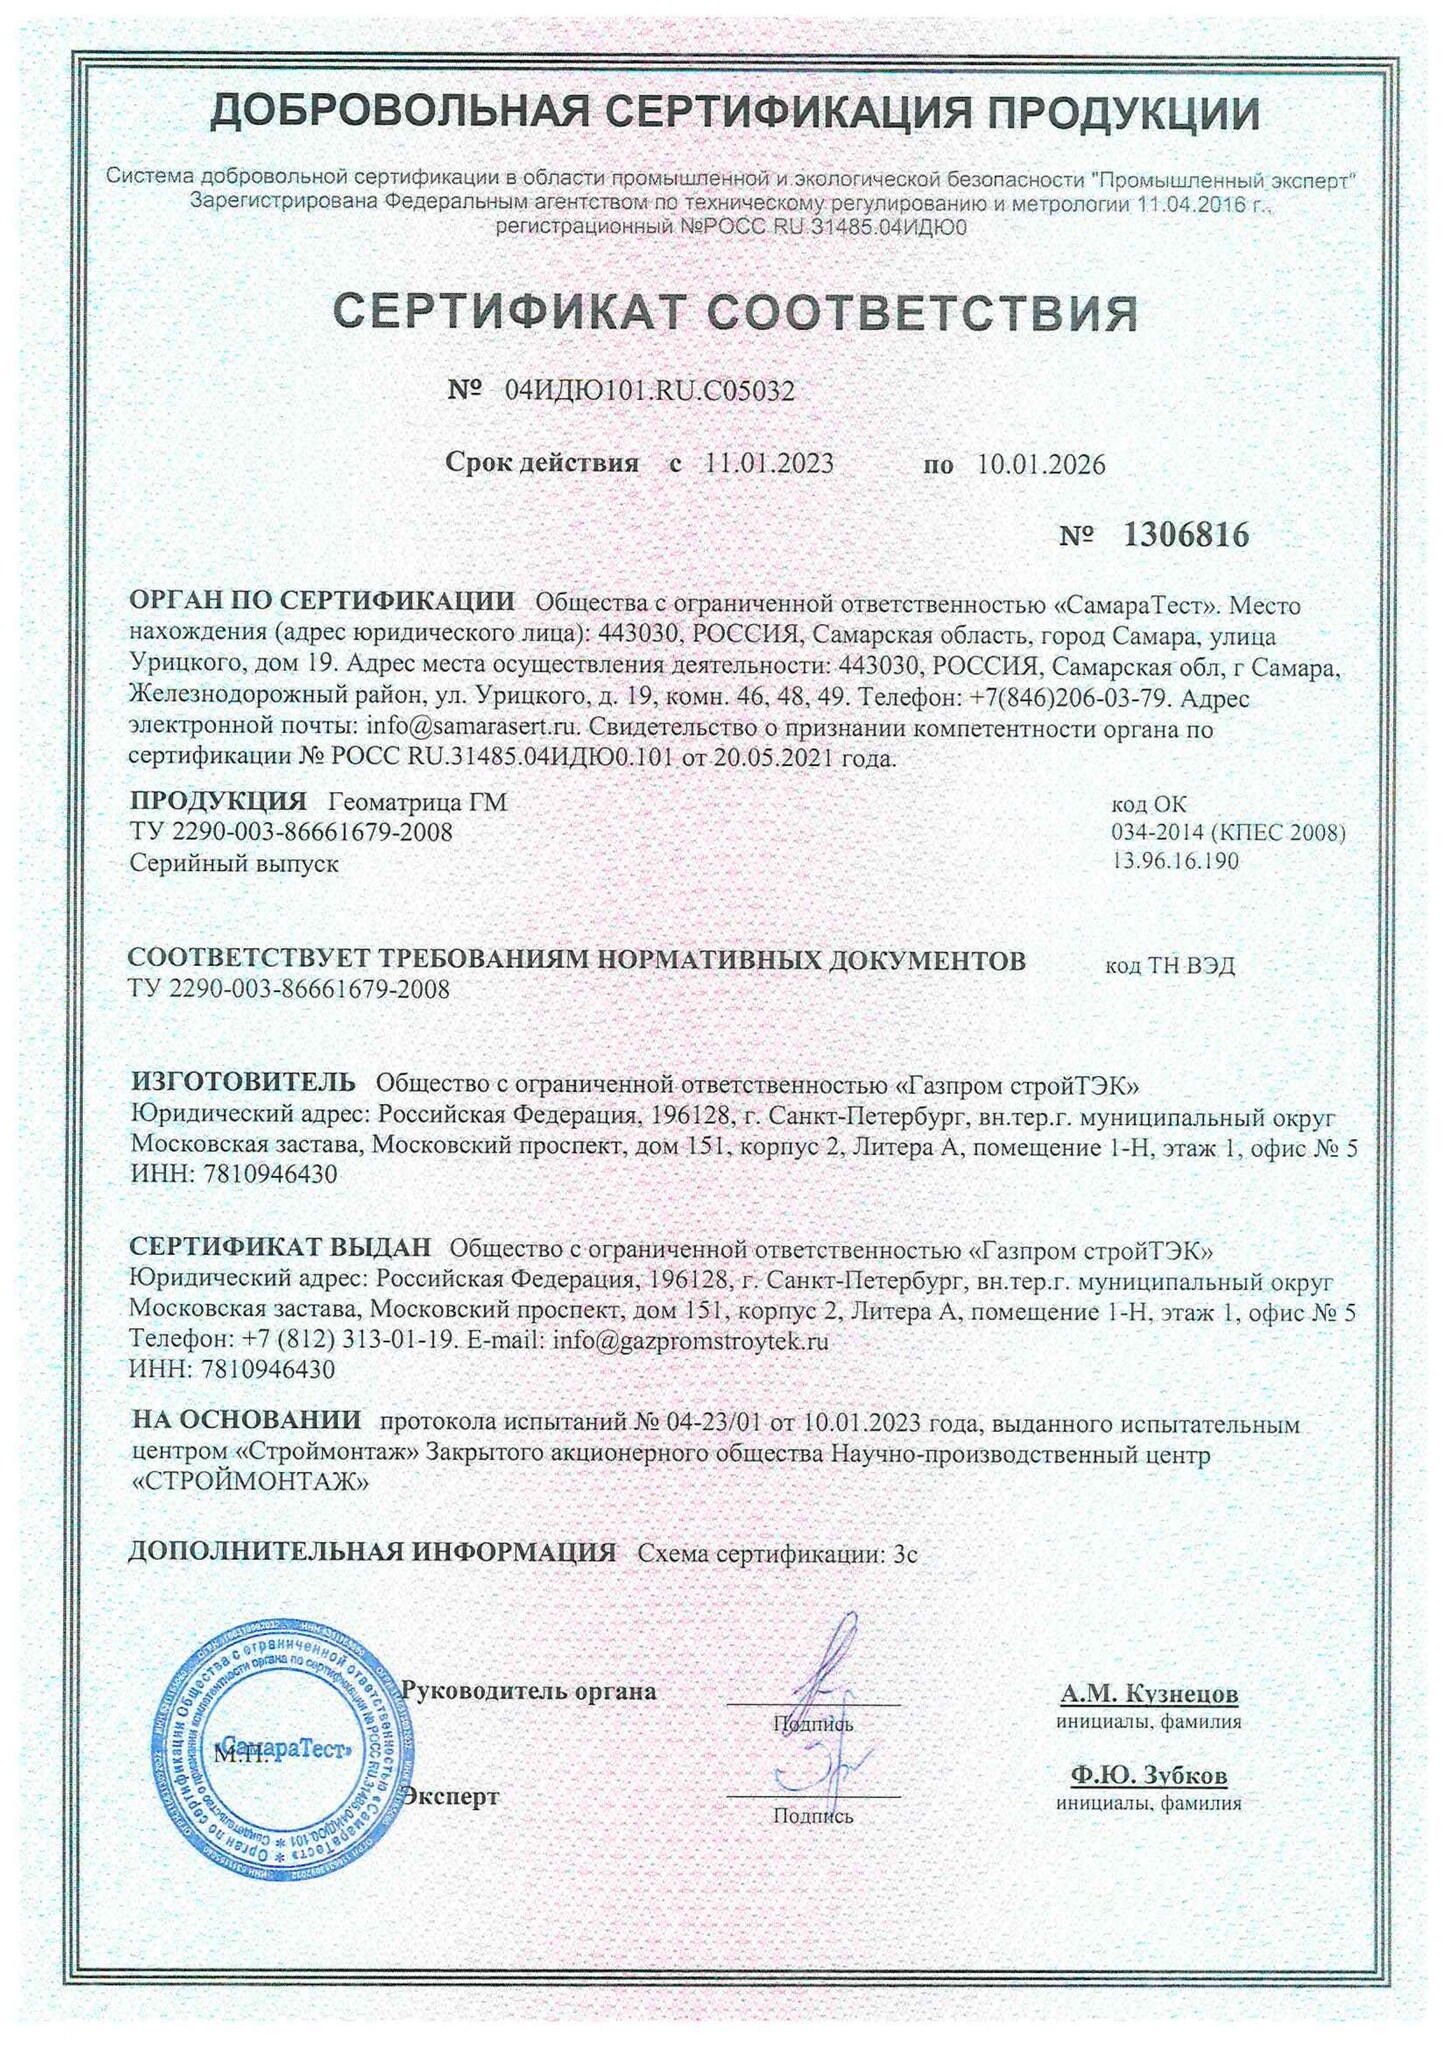 Сертификат Геоматрица ГМ до 10.01.2026